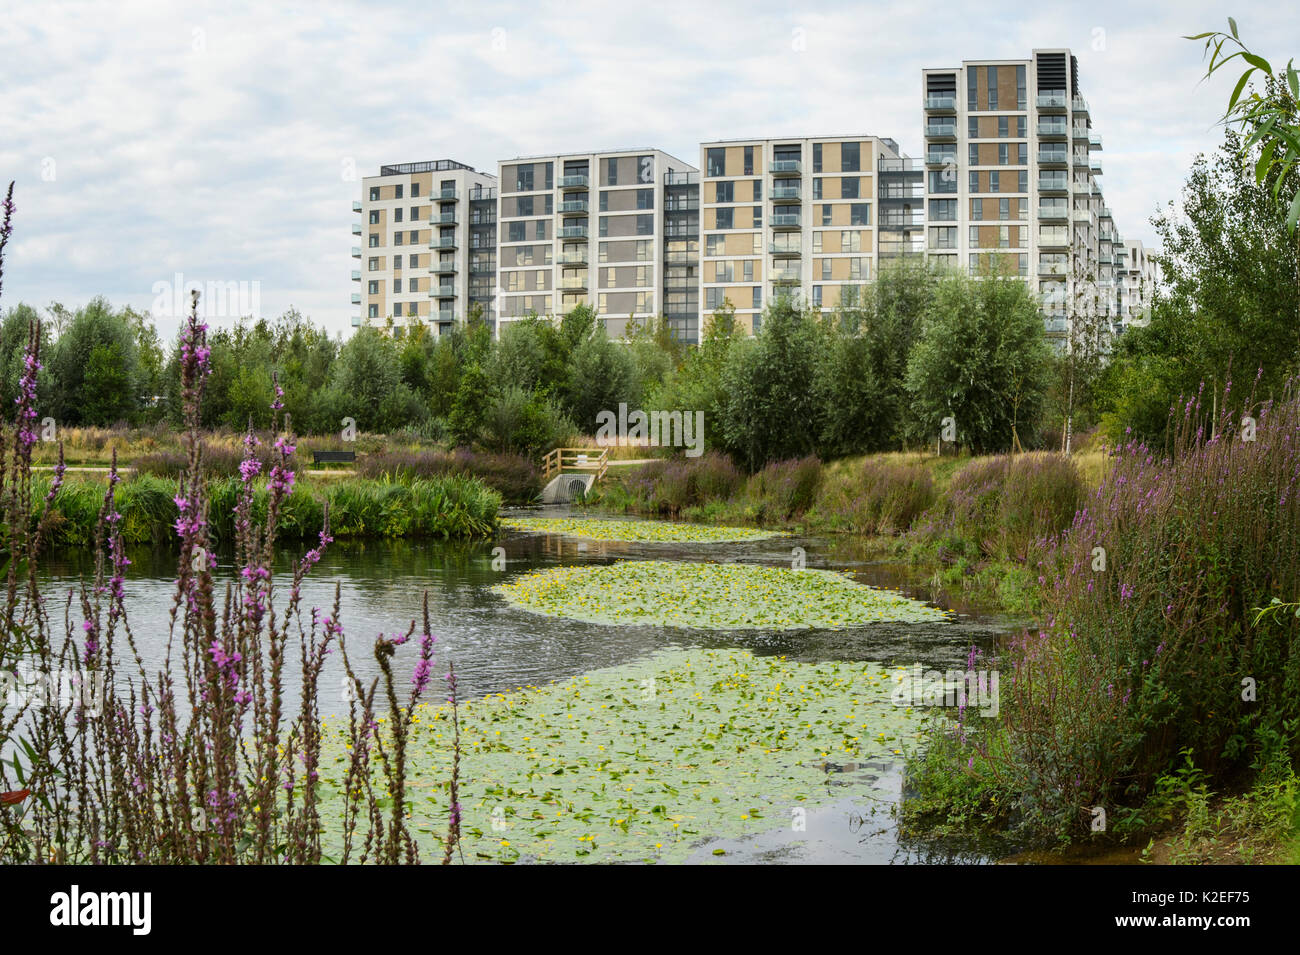 Enriquecimiento ambiental diseñada en urbanización, con estanque de vida silvestre y espacios verdes, East Village en el sitio de alojamiento de la Villa Olímpica, Stratford, London, UK 2014 Foto de stock